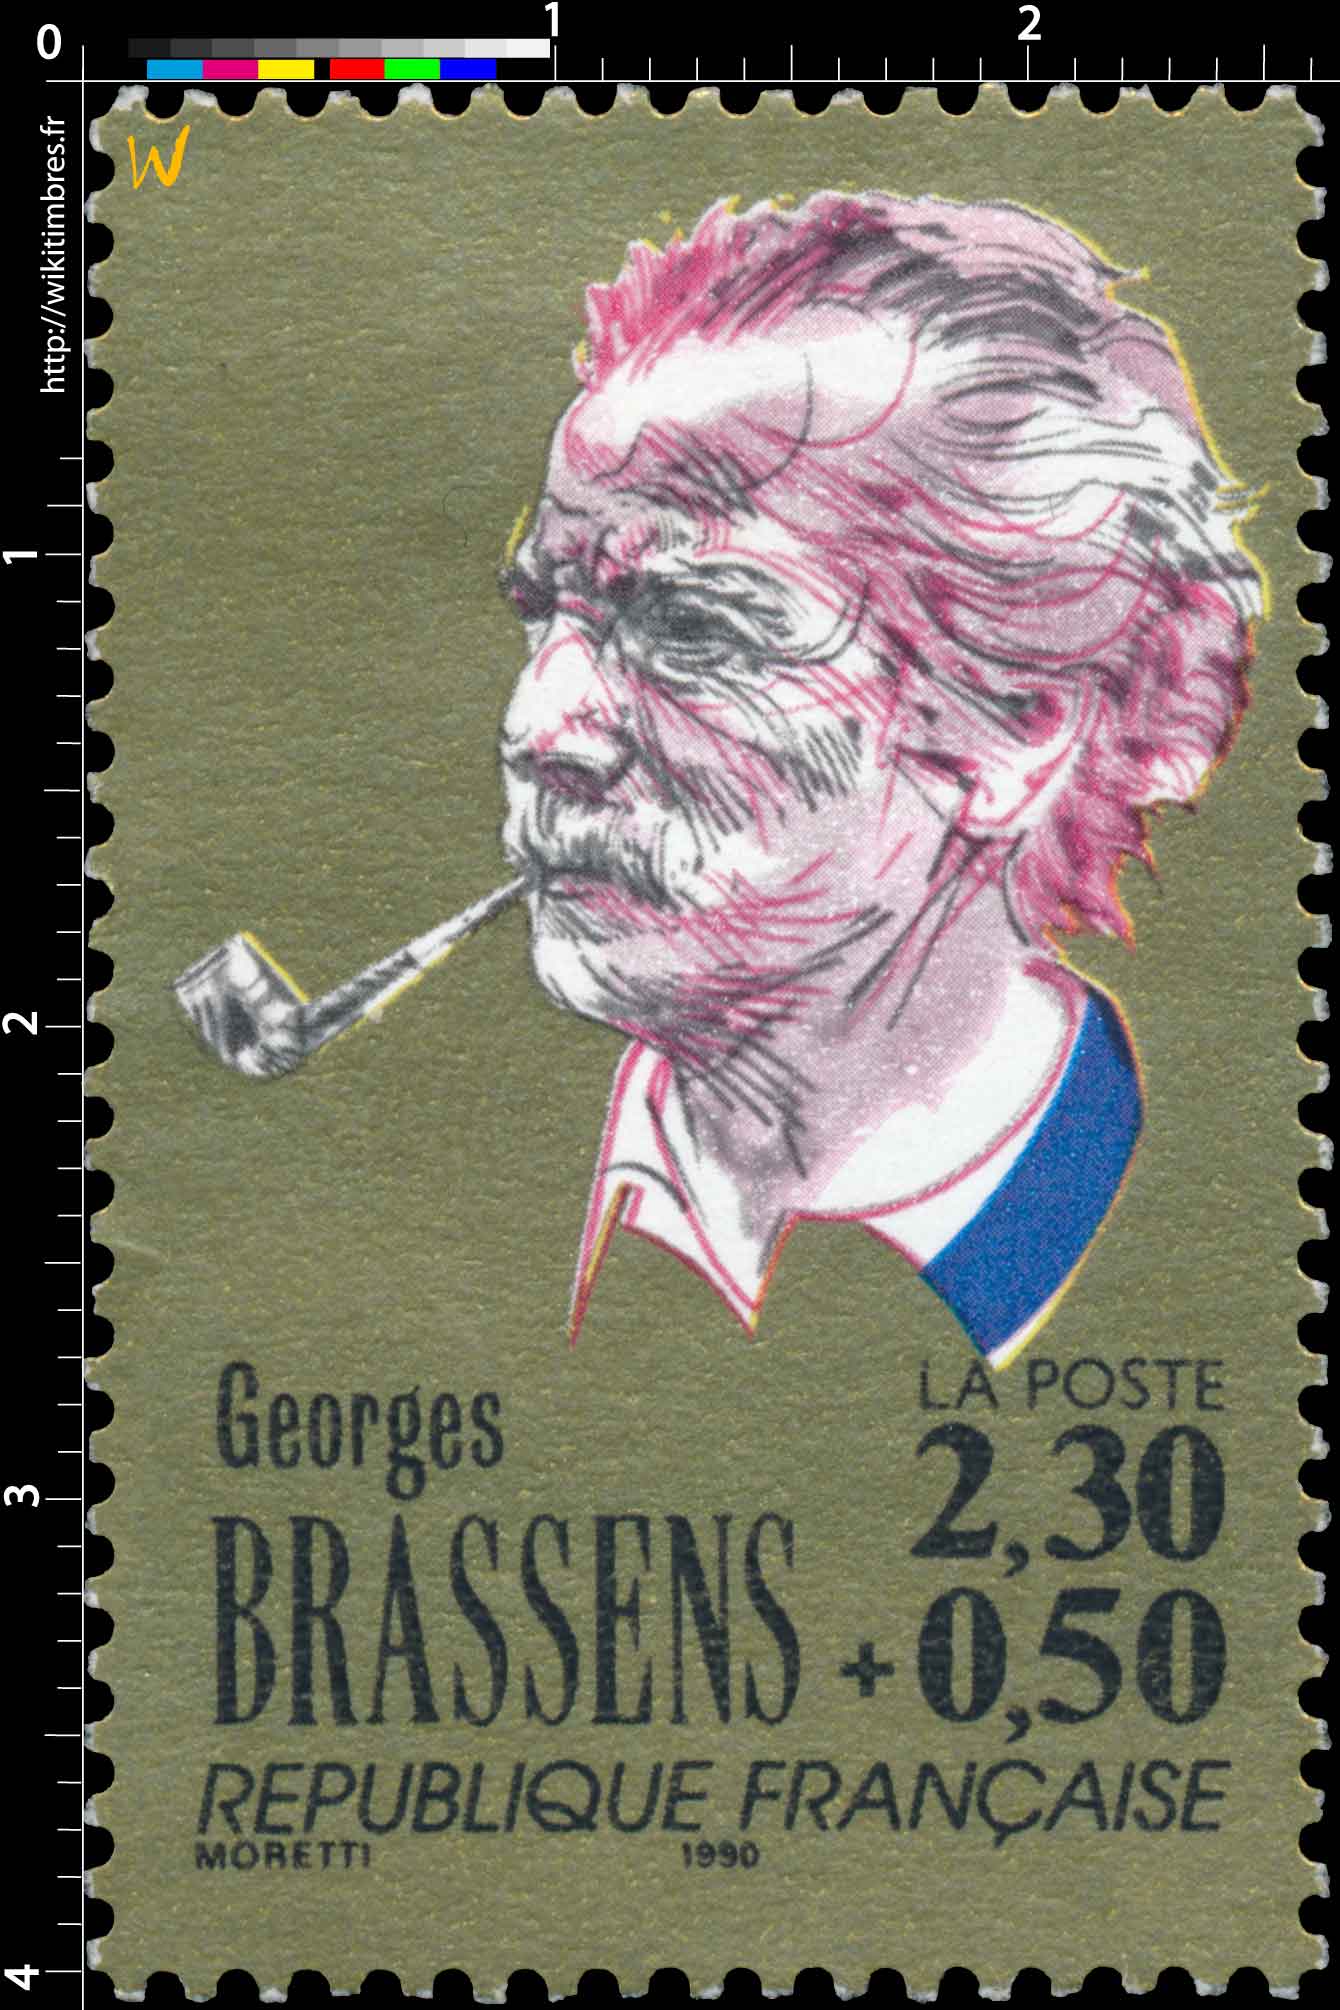 1990 Georges BRASSENS